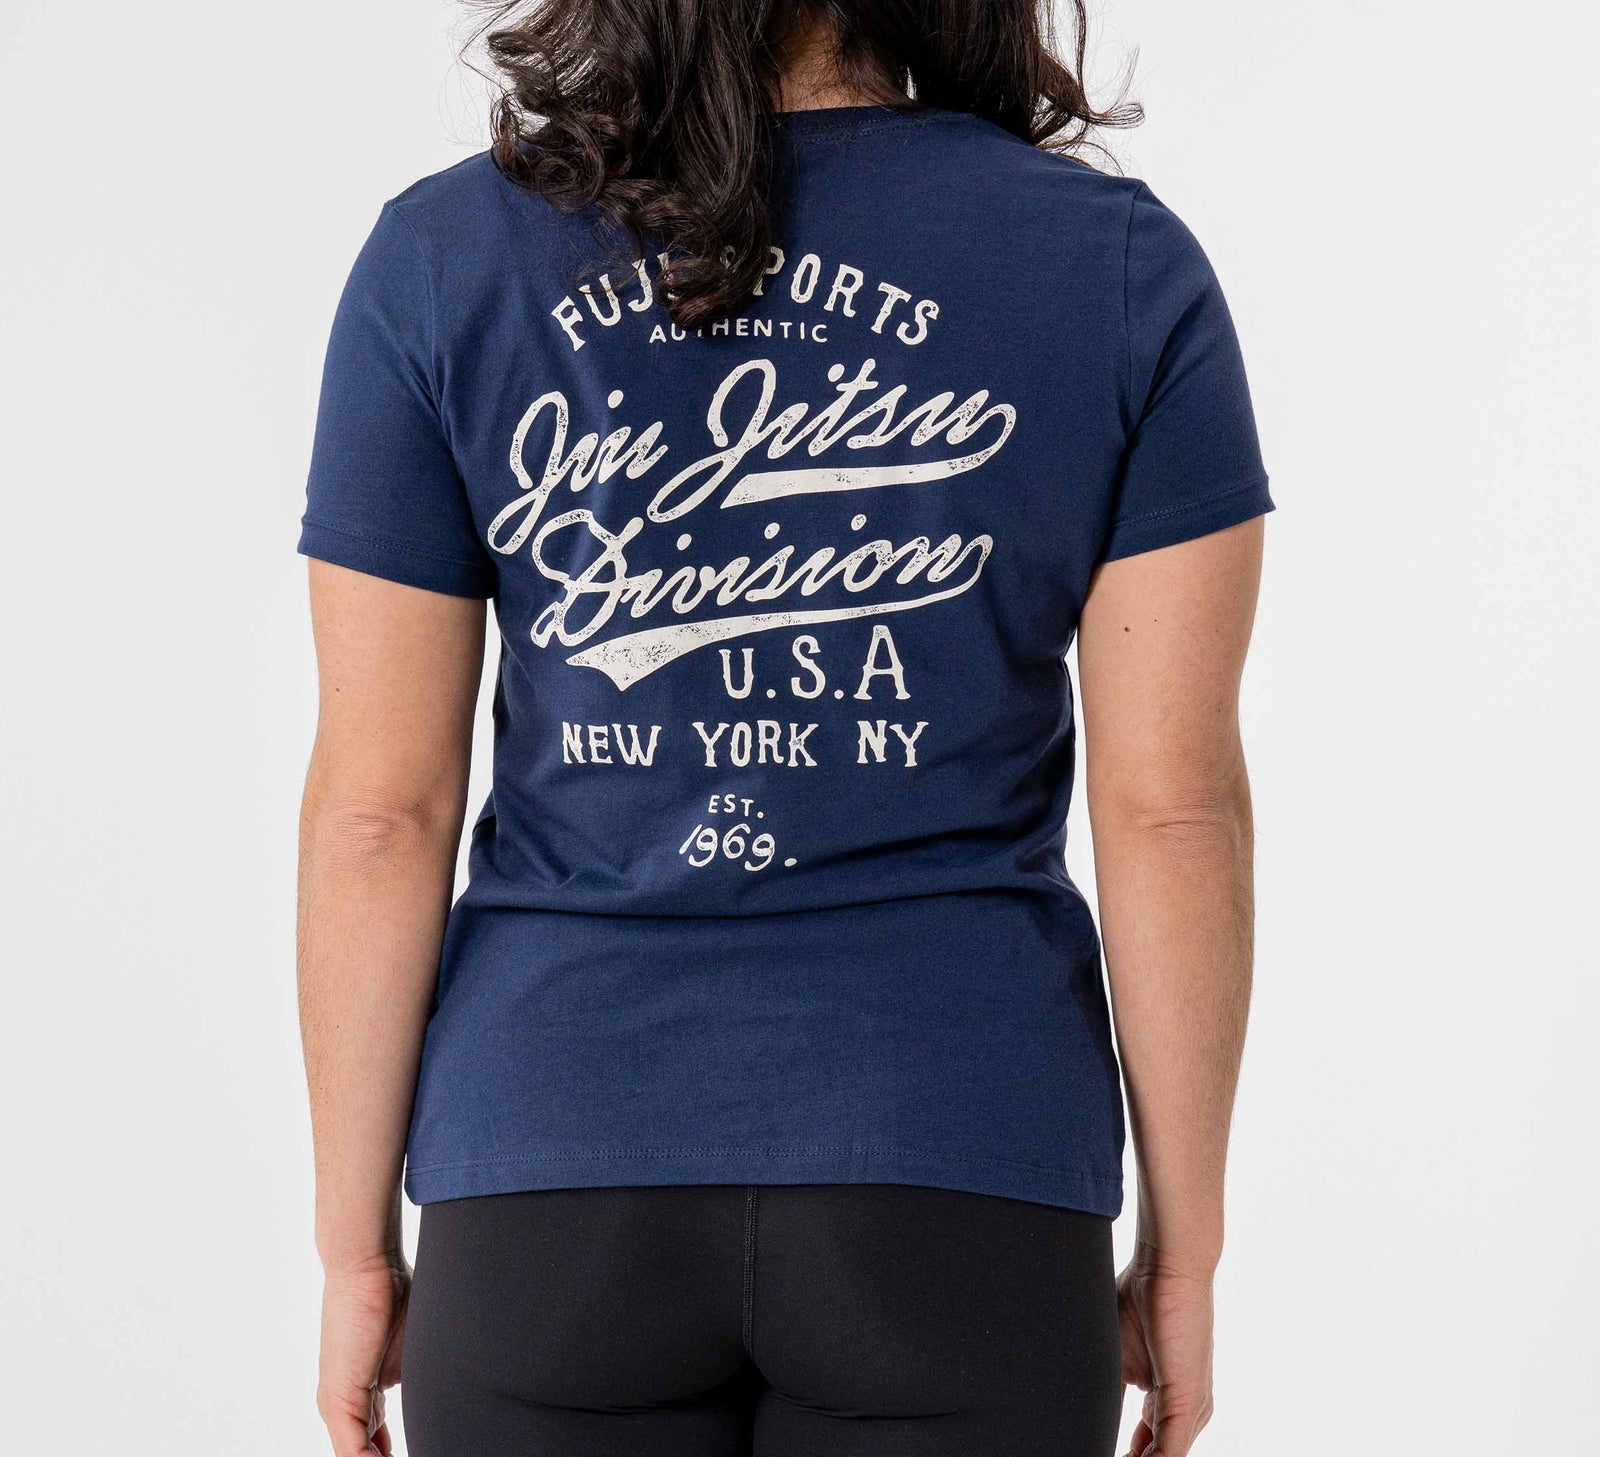 Womens Jiu Jitsu Flow T-Shirt Navy